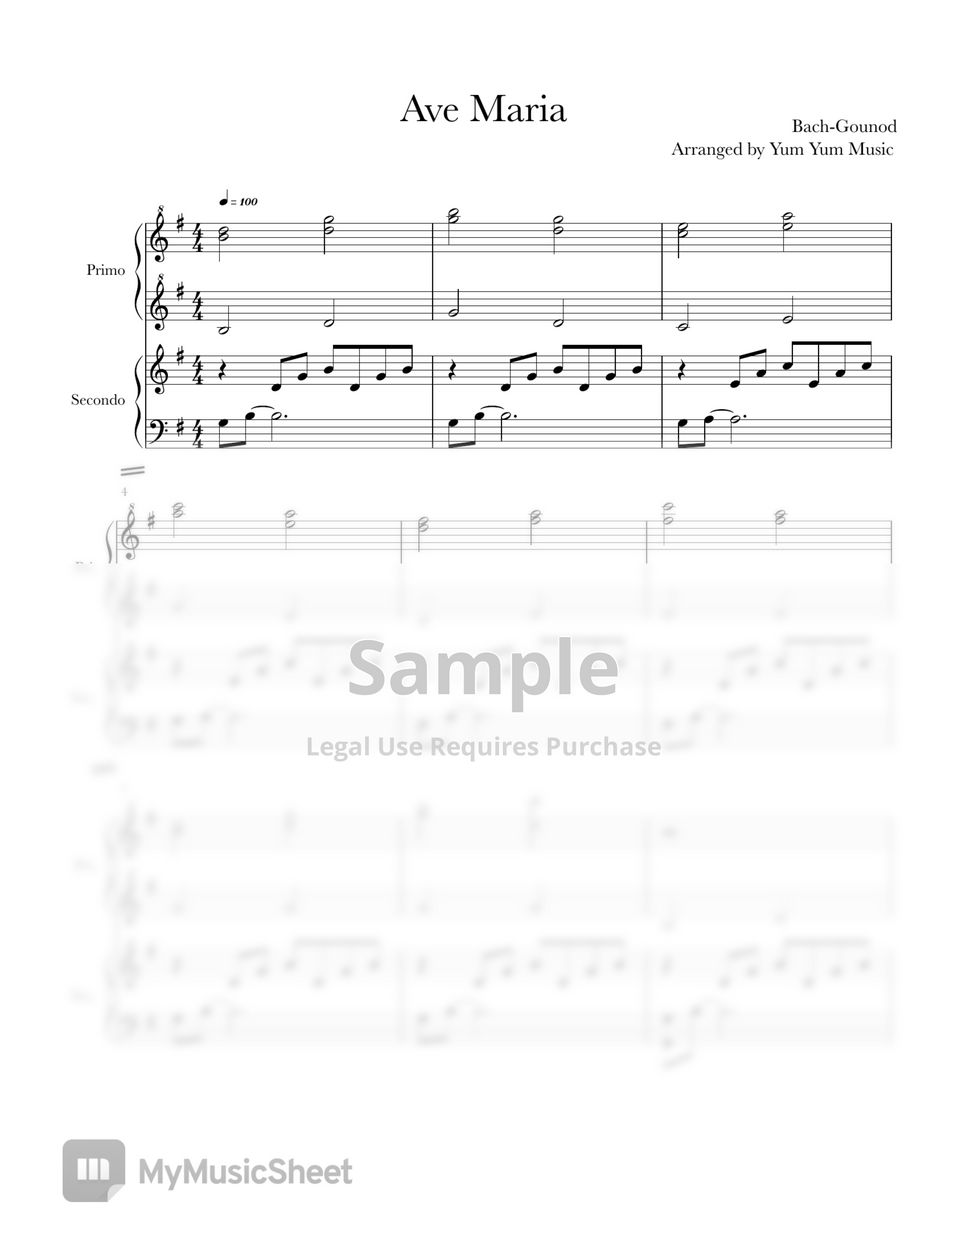 Bach-Gounod - Ave Maria Piano Duet by Yum Yum Music